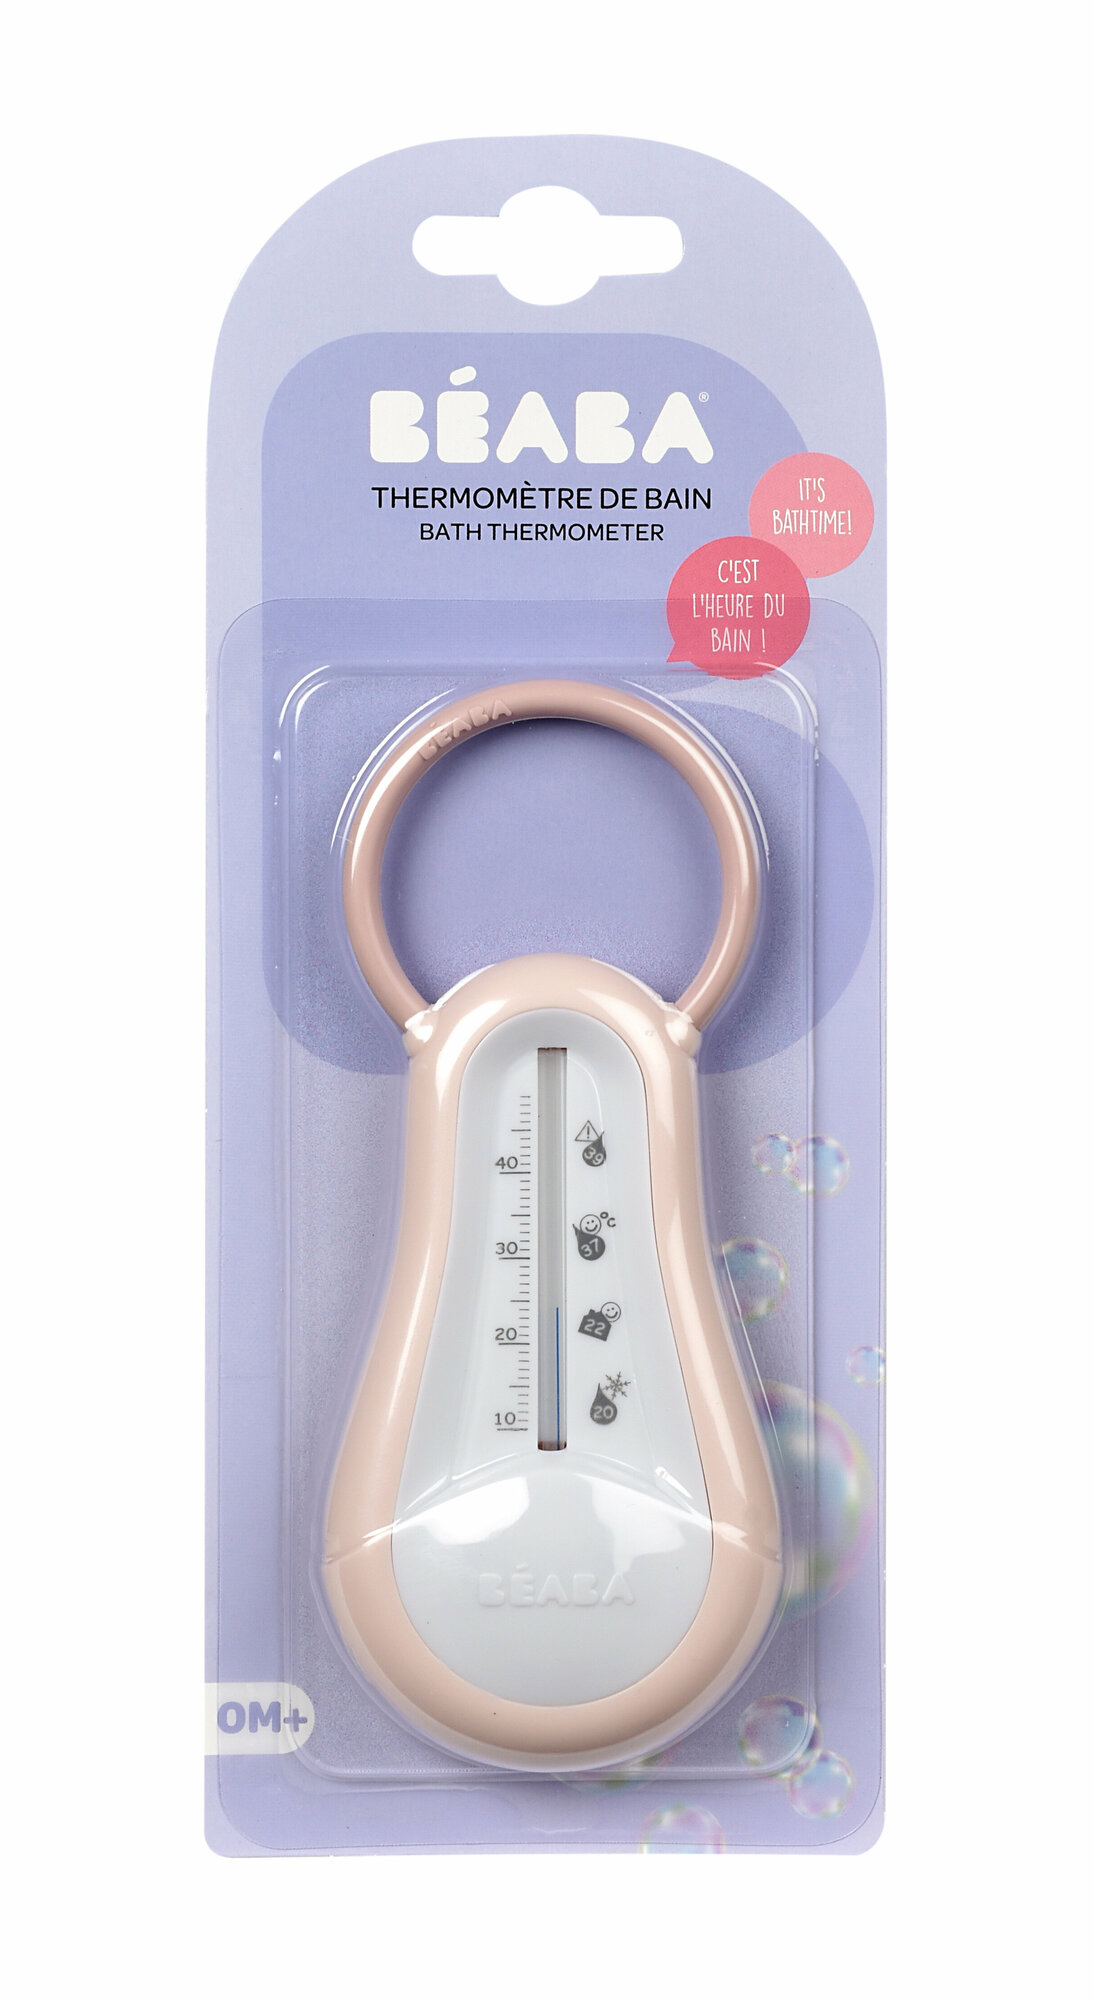 Термометр для воды детский BEABA, термометр комнатный без ртути, розовый